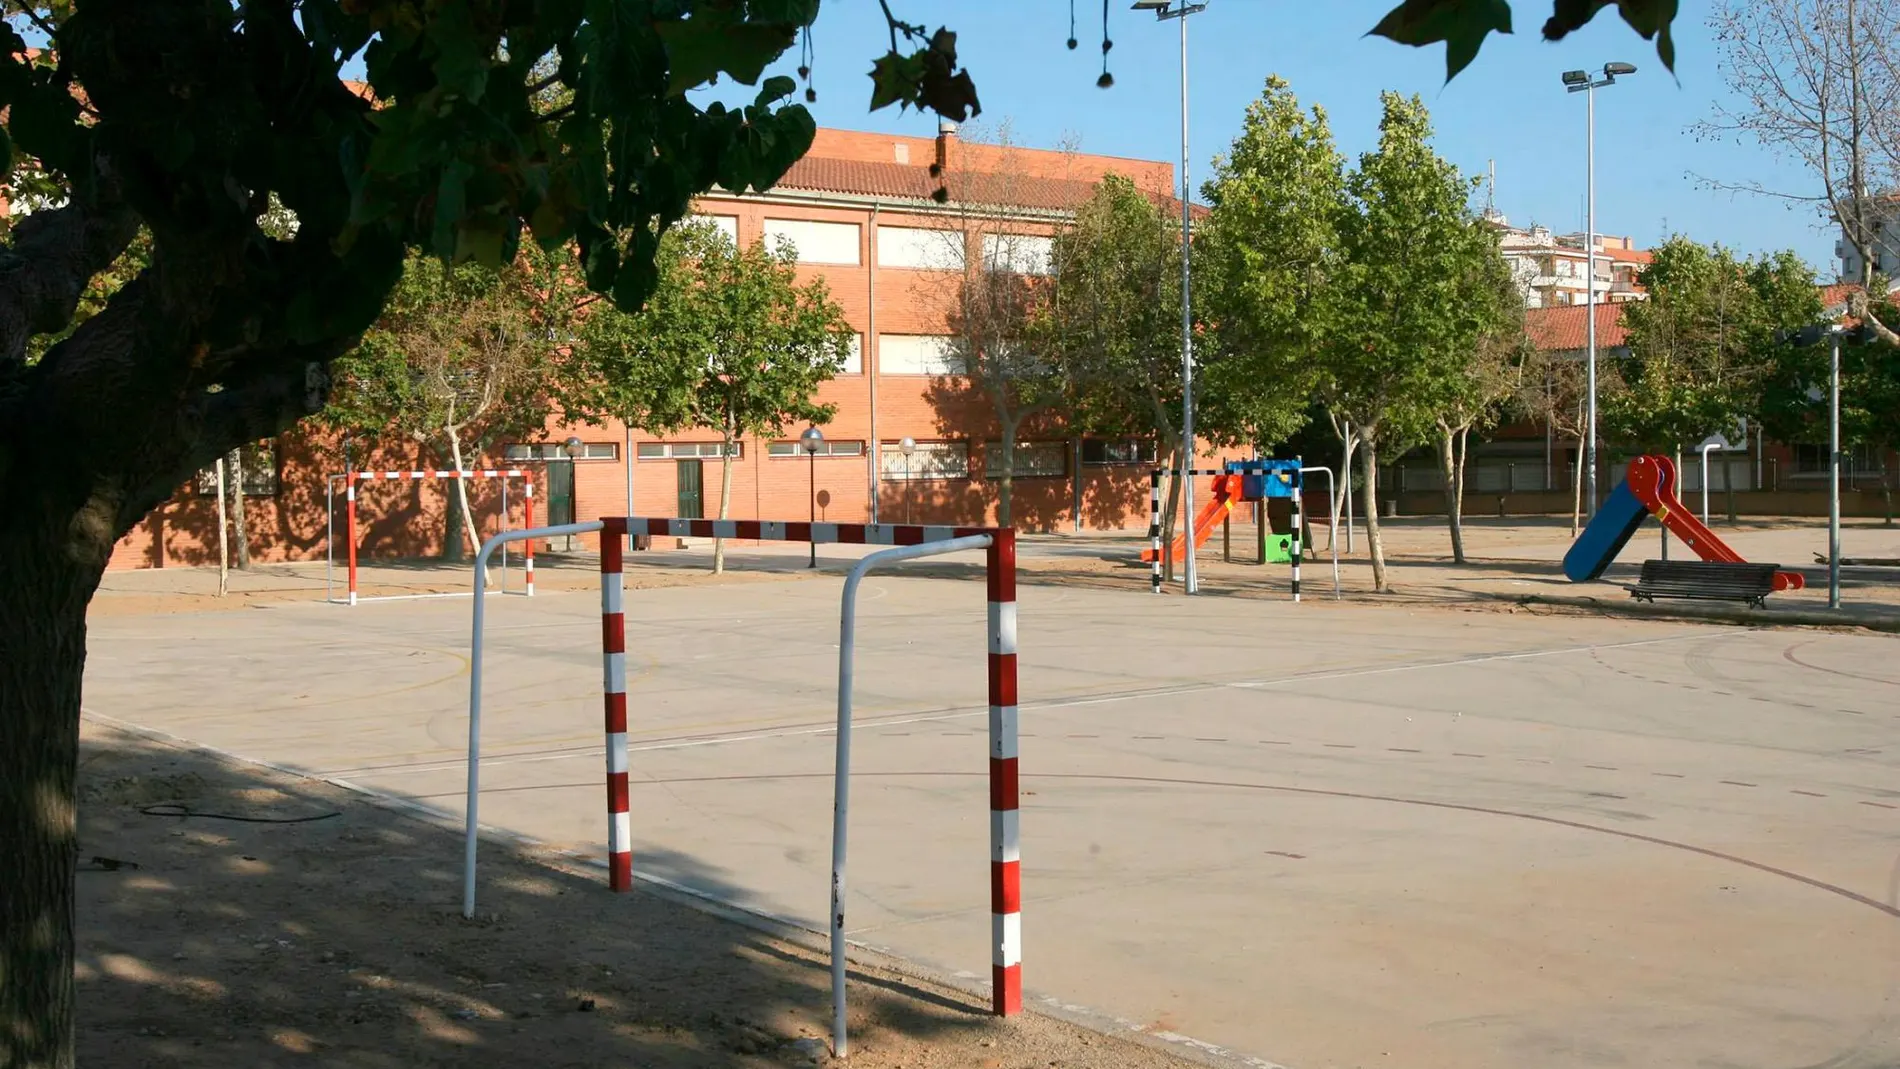 El patio de la escuela donde un conserje fue acusado de tocamientos a dos niñas de nueve años / Foto: Efe